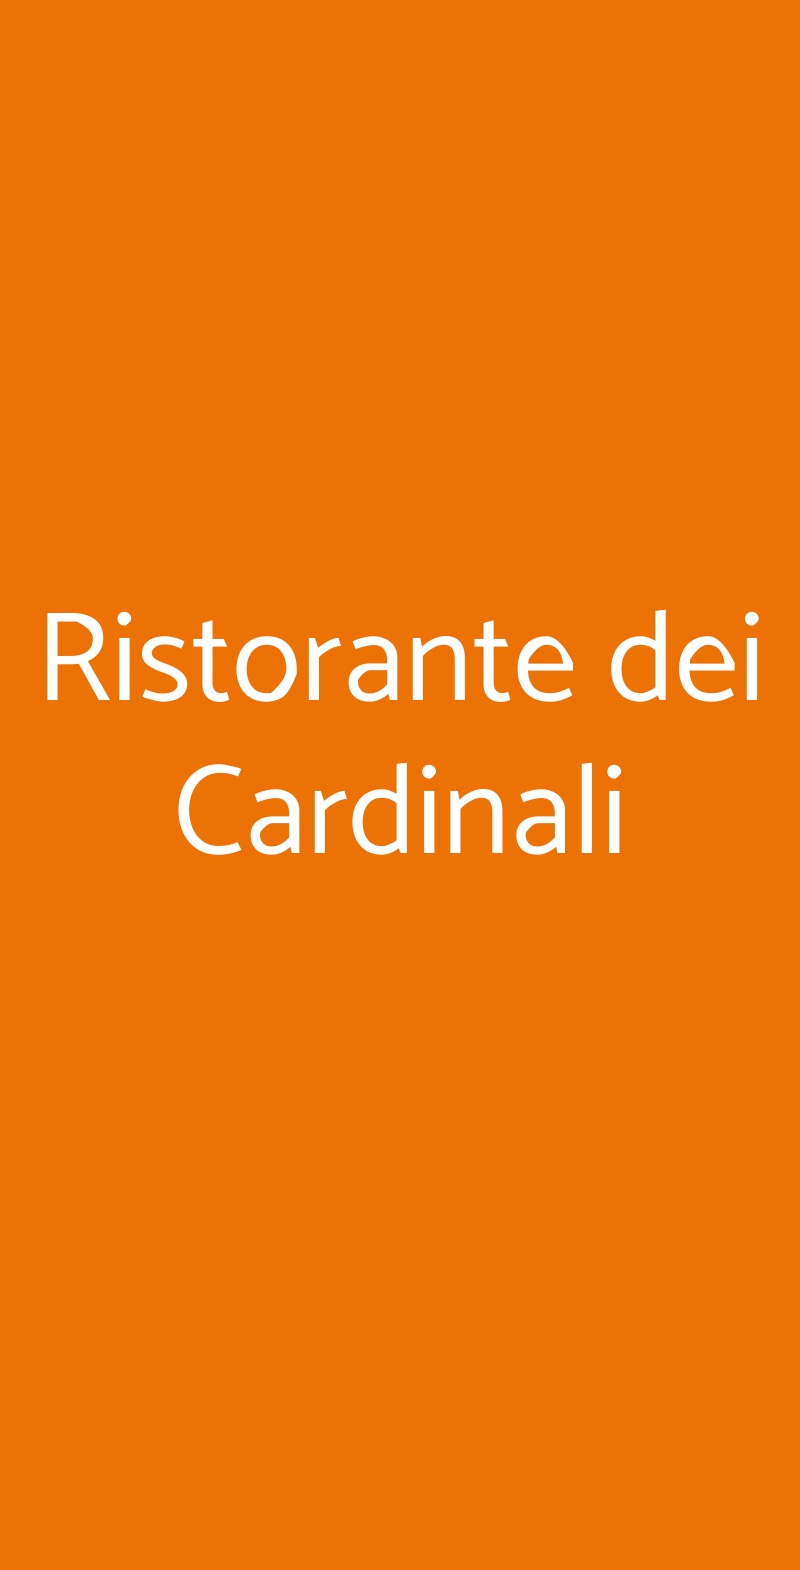 Ristorante dei Cardinali Riolo Terme menù 1 pagina